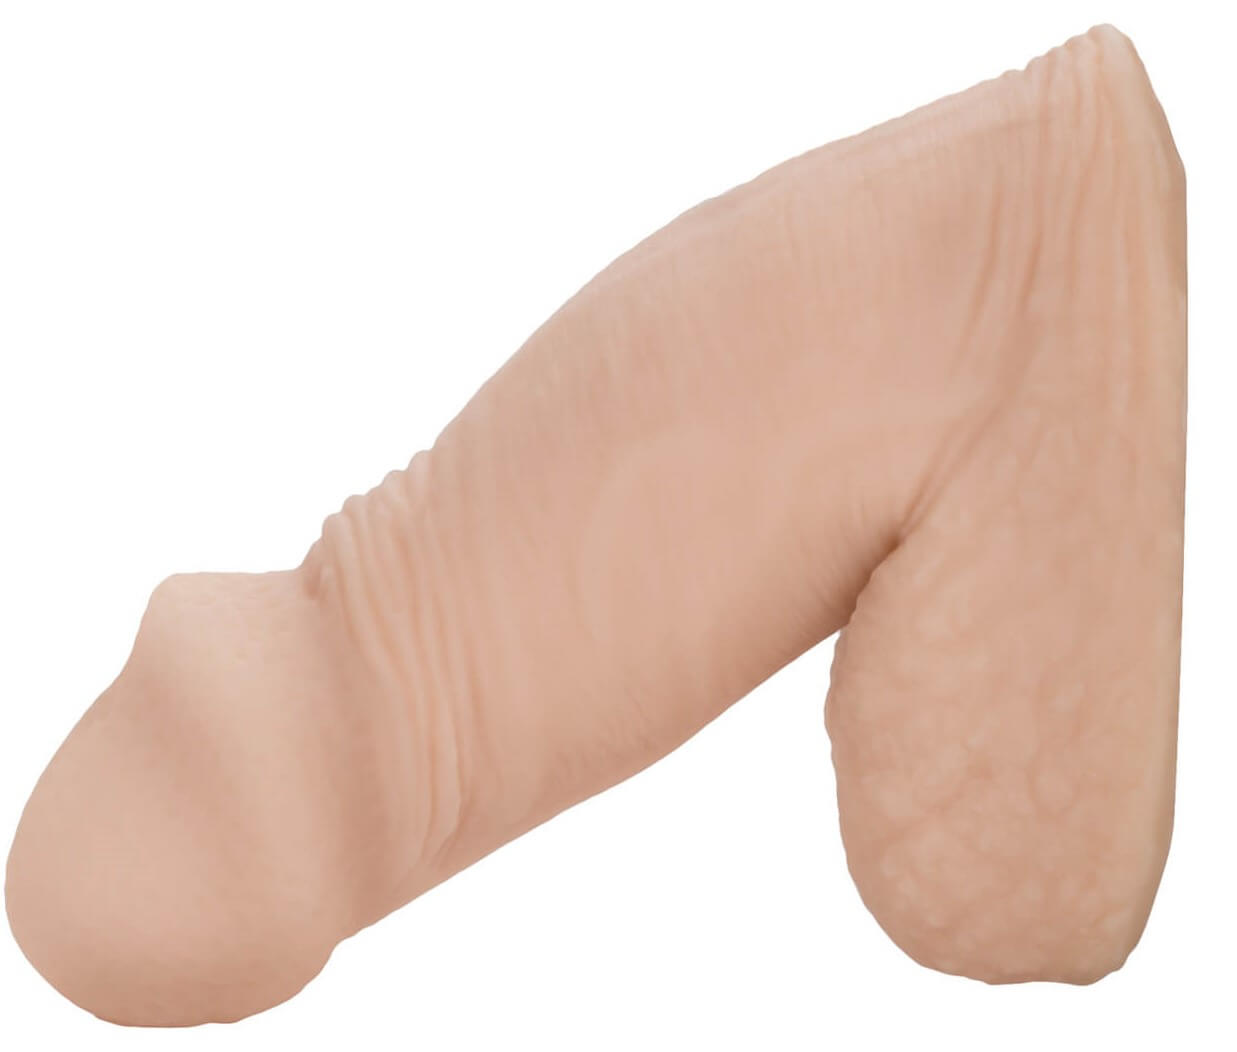 Falešný penis na vyplnění rozkroku 12,75 cm CALEX